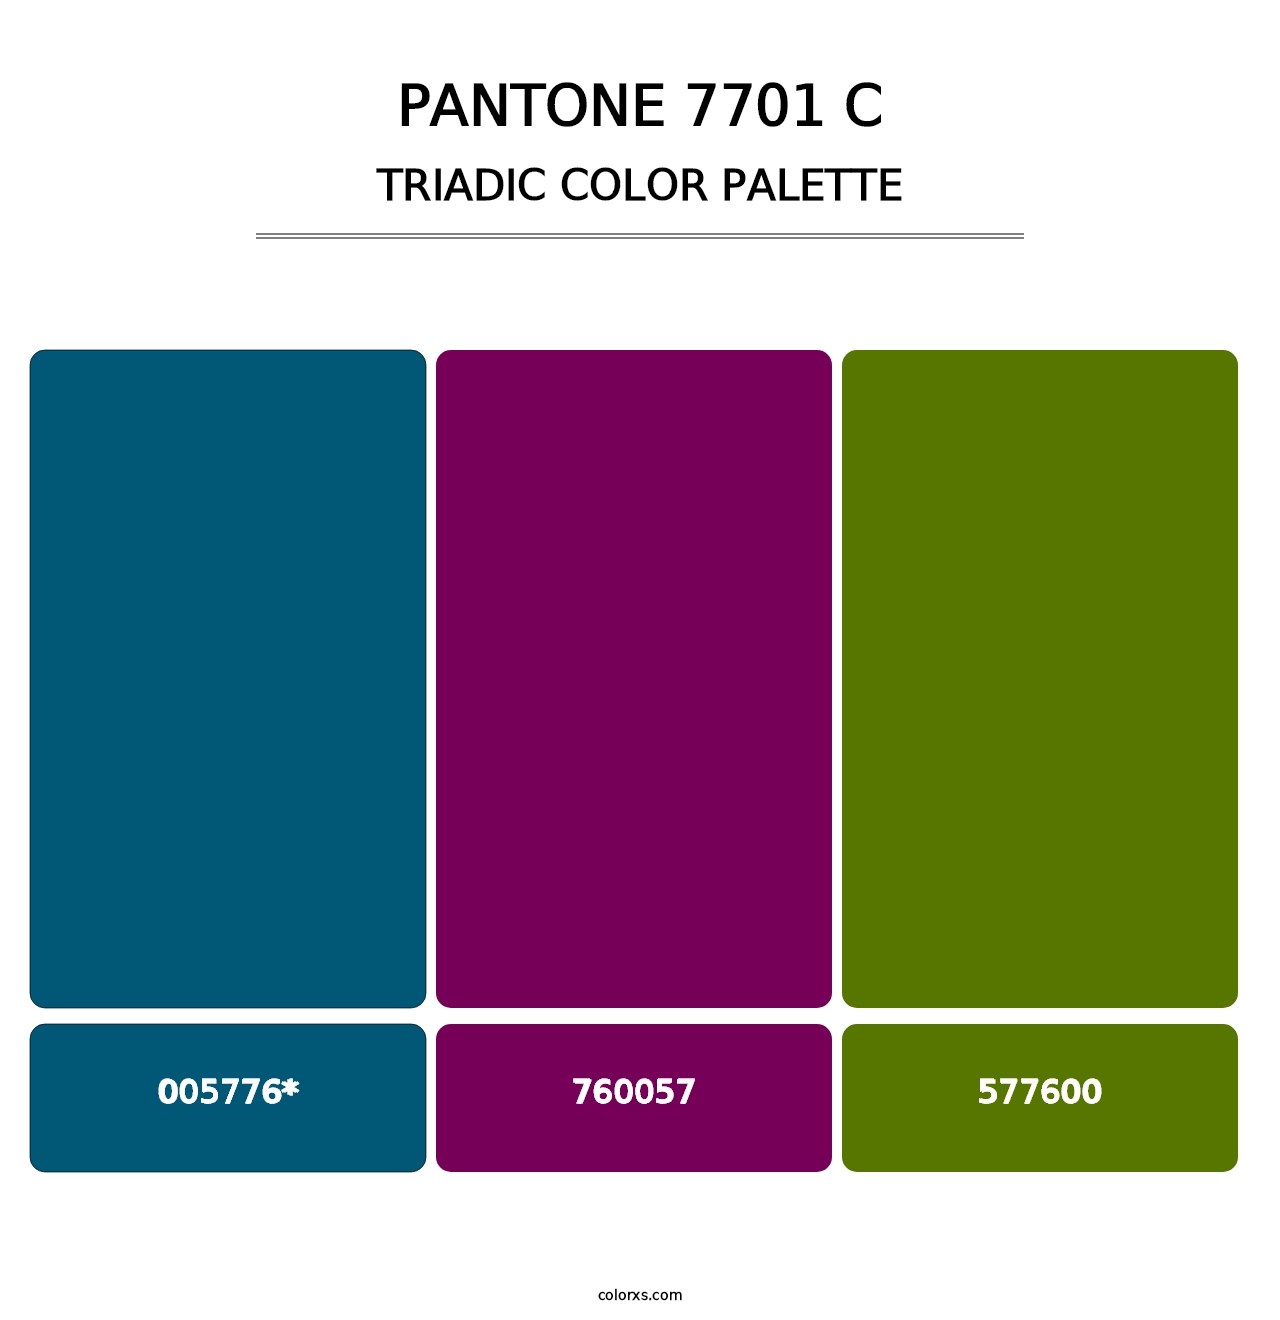 PANTONE 7701 C - Triadic Color Palette